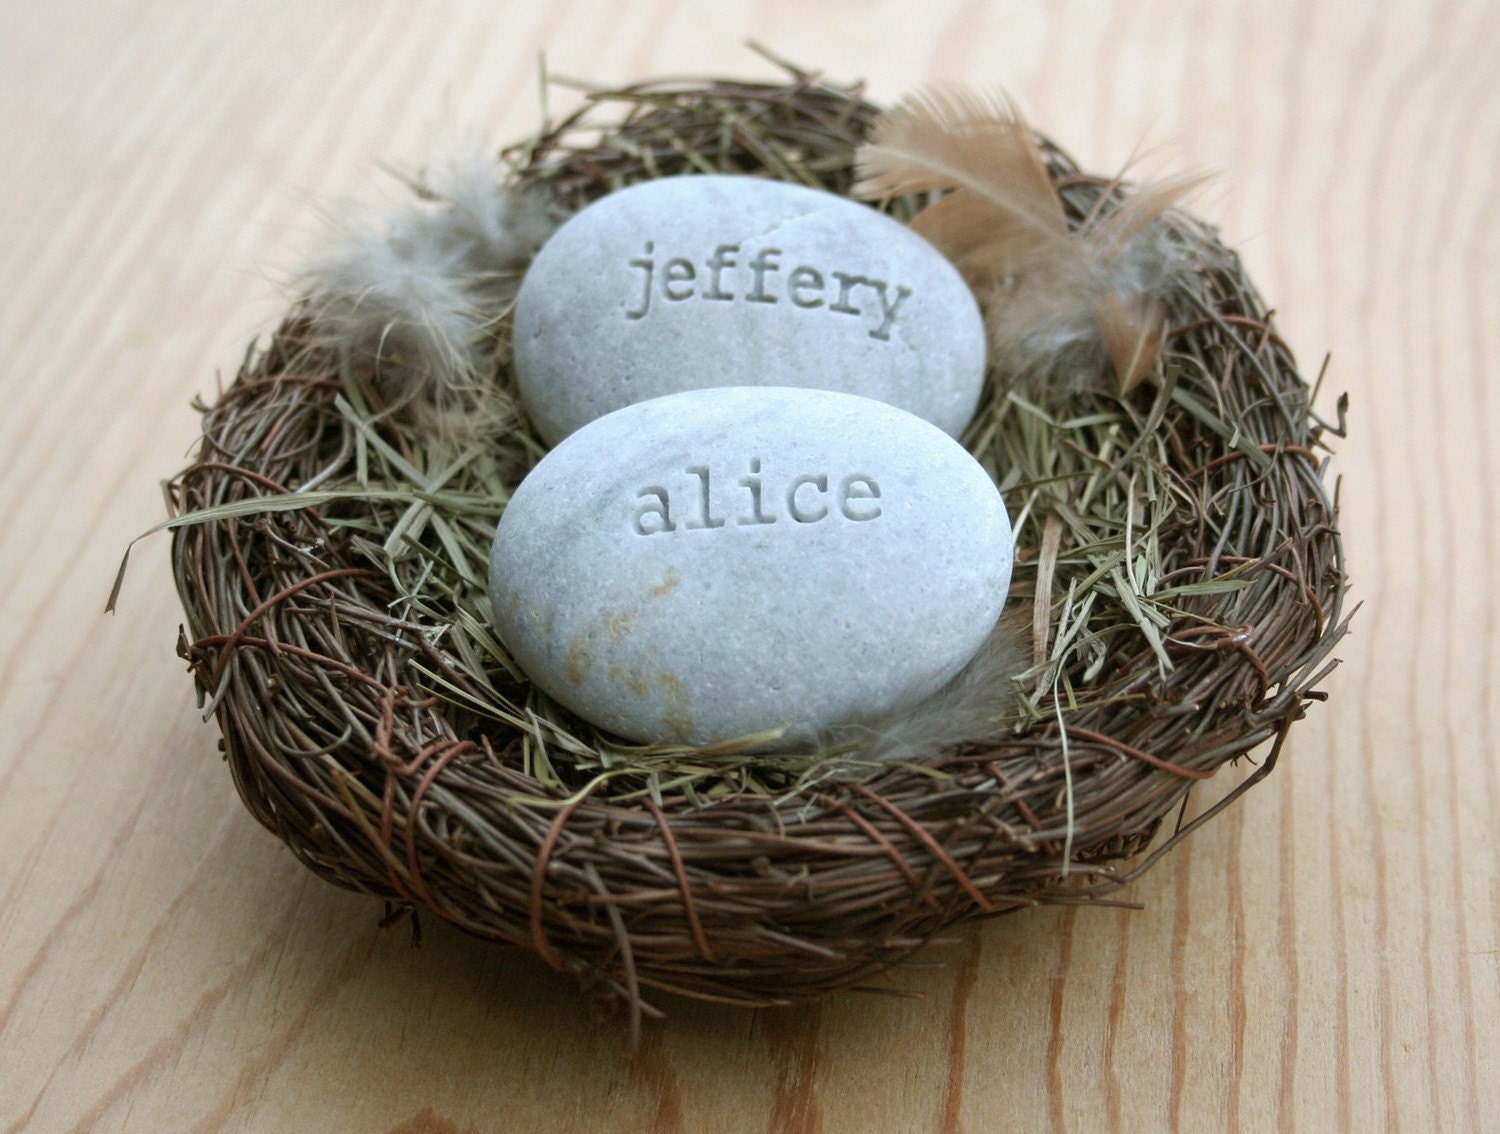 Our nest - custom engraved name stones in nest